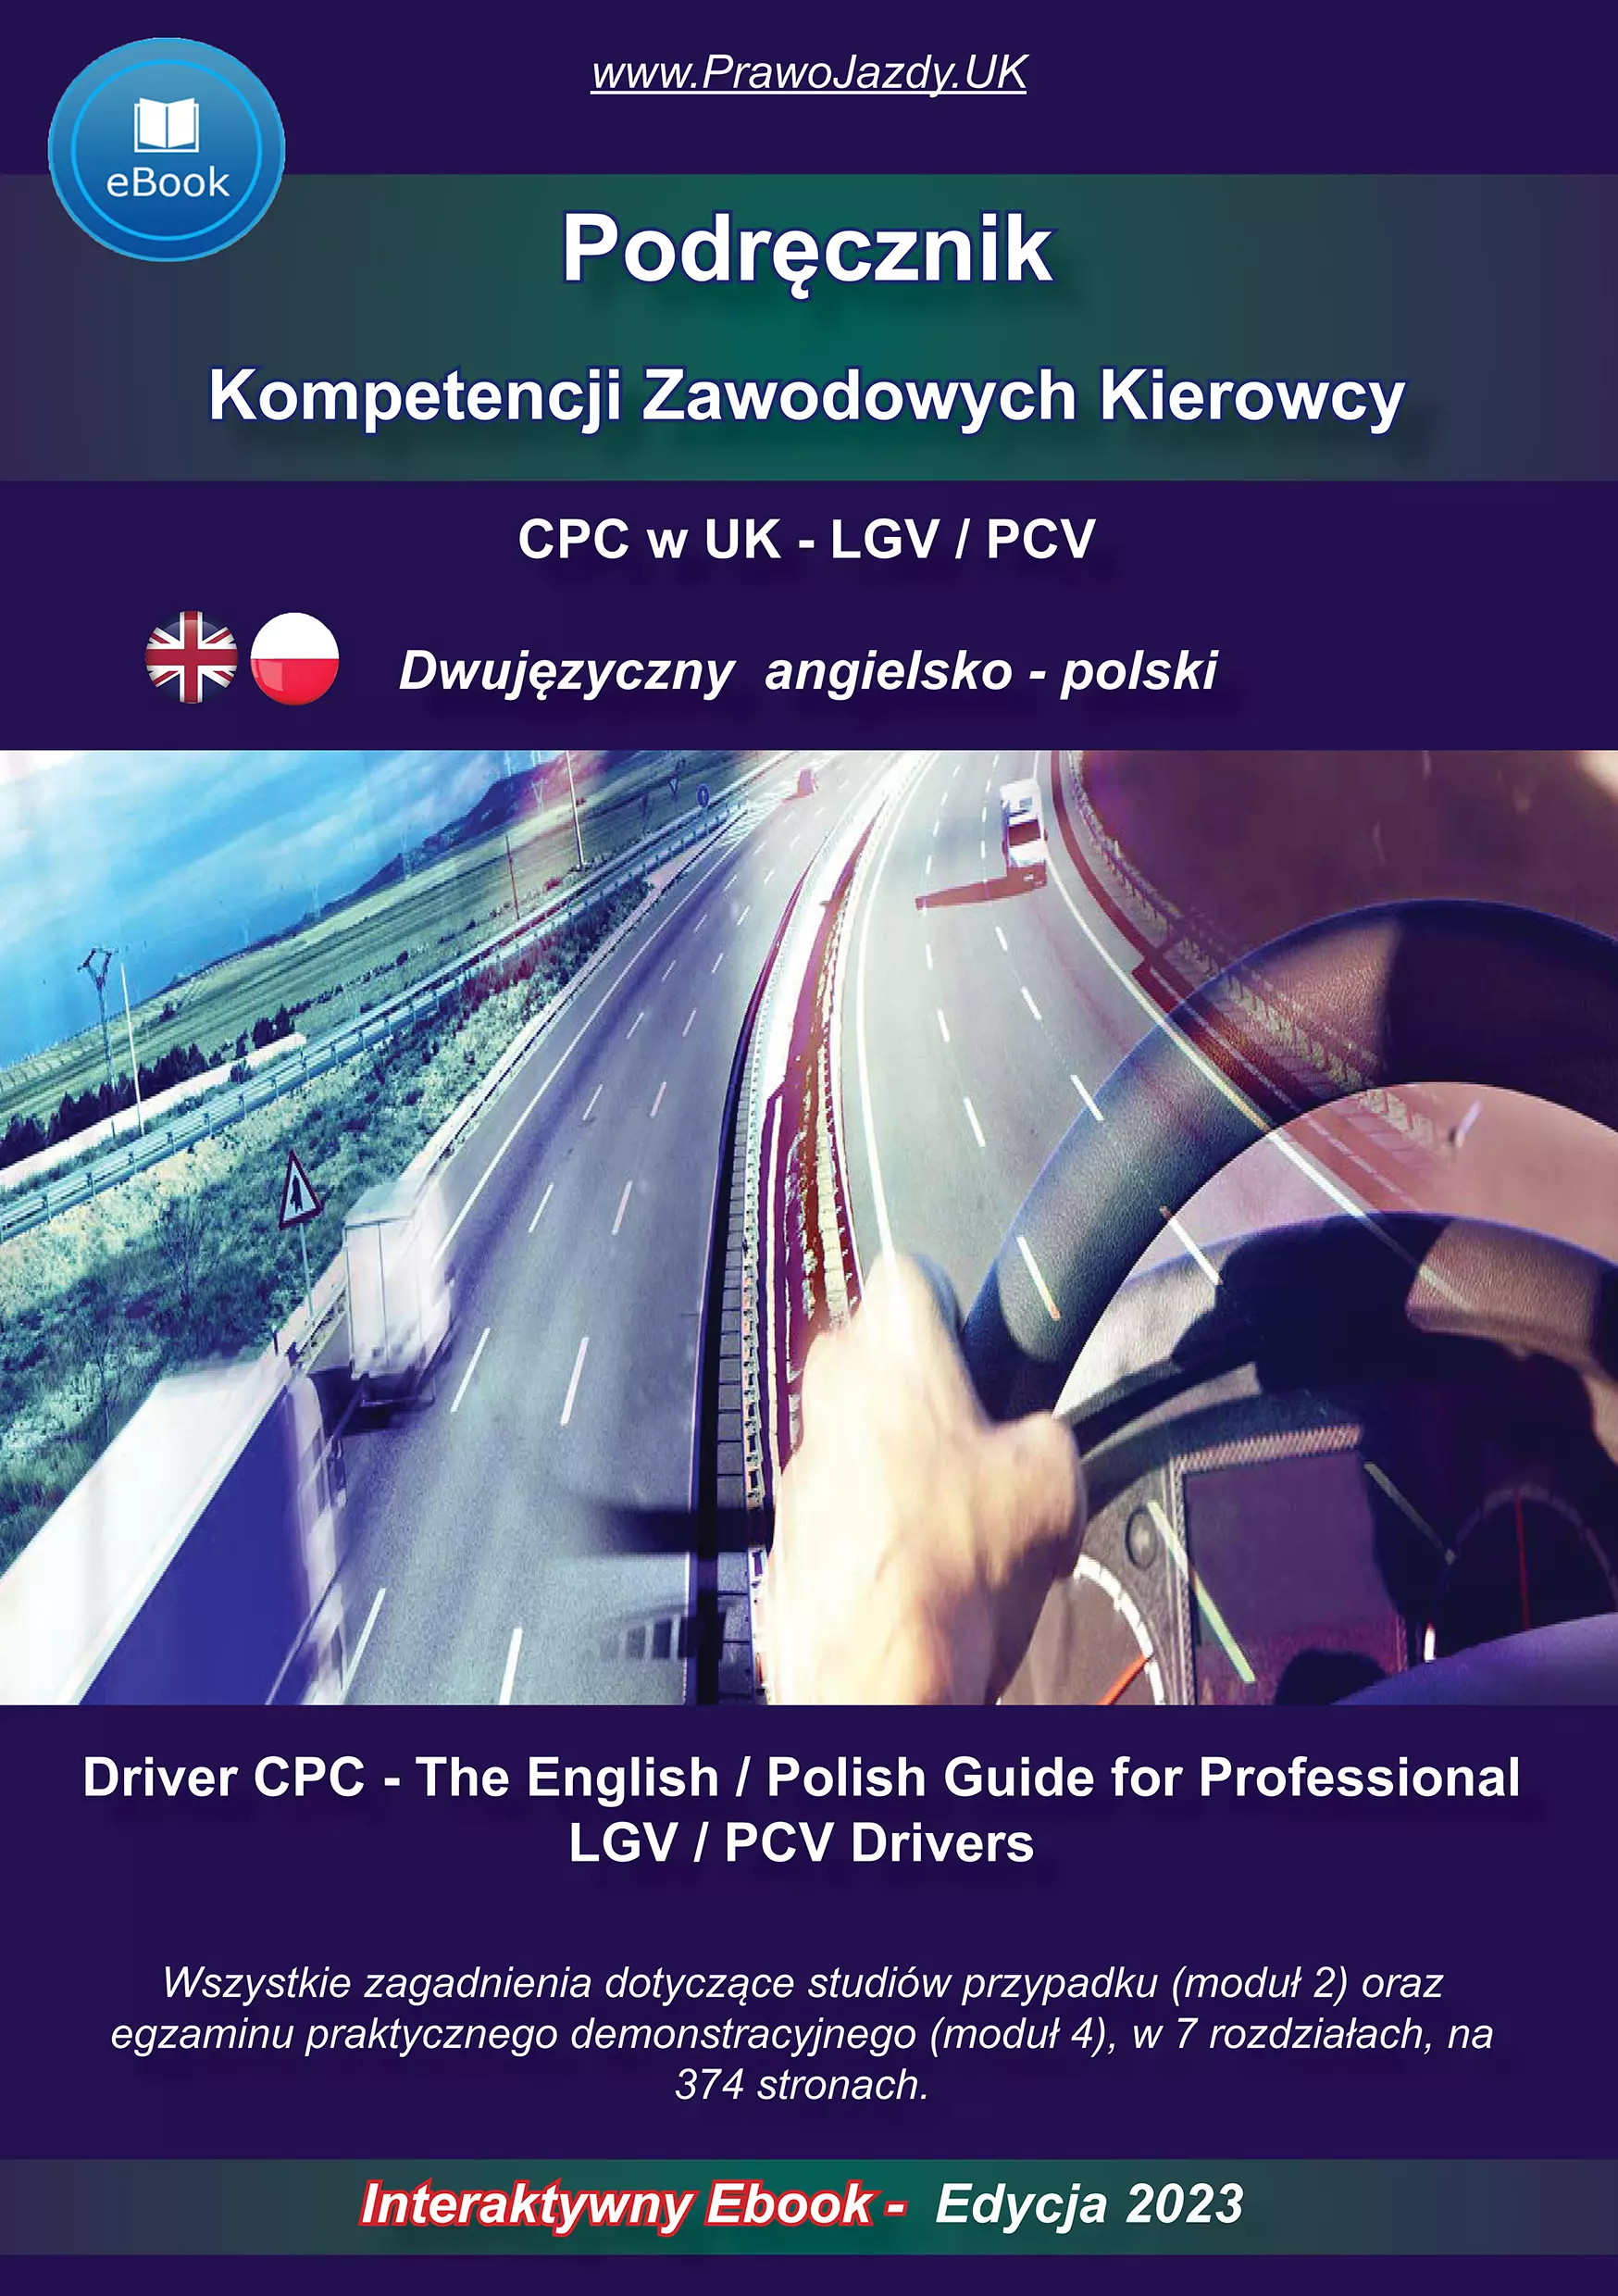 Jak wyrobić CPC card kartę UK kursy przez internet po polsku online cena pytania i odpowiedzi kurs odnowienie